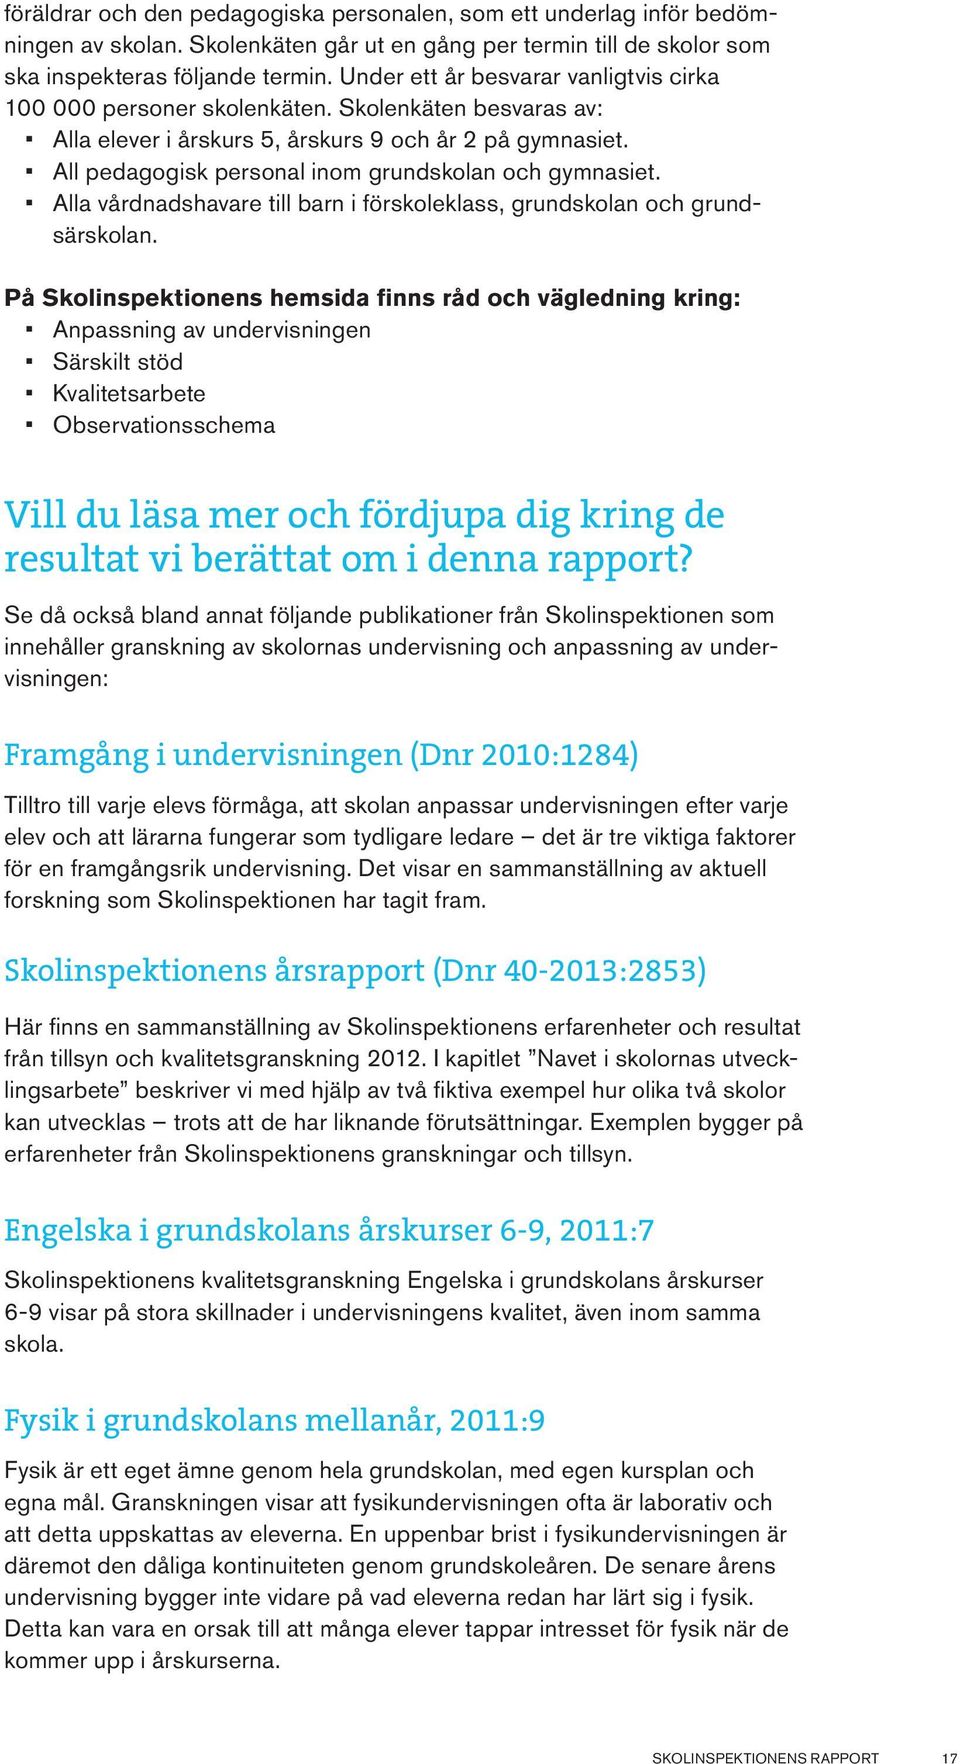 Språk- och kunskapsutveckling för barn och elever med annat modersmål än svenska, 2010:16 Barn som inte har svenska som modersmål får sämre förutsättningar att nå målen.